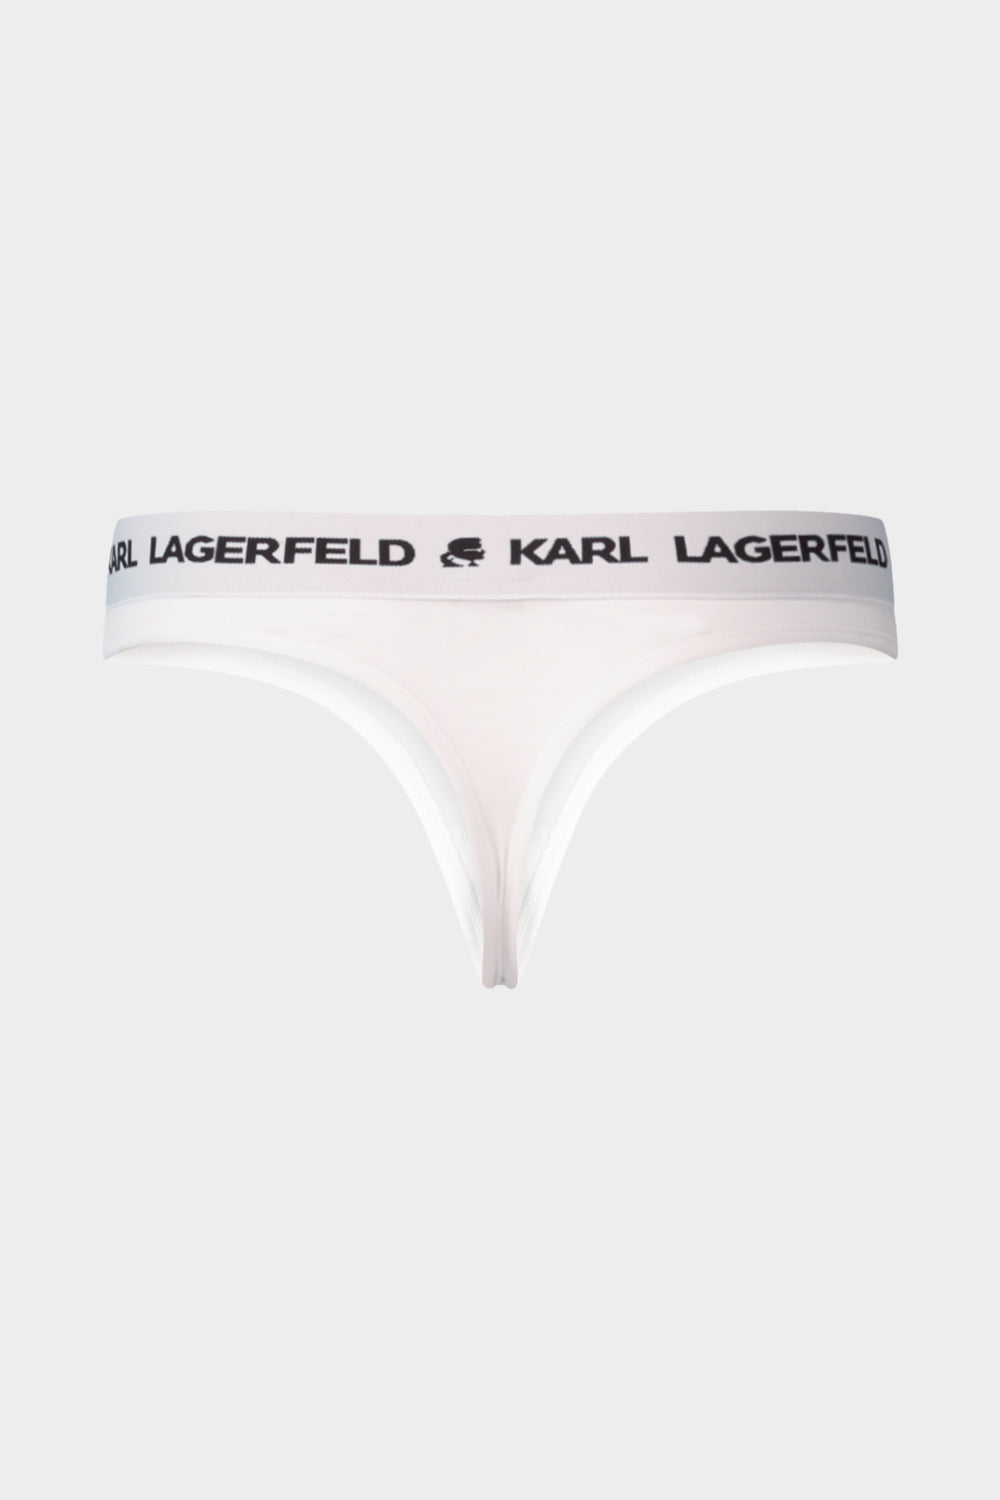 תחתוני חוטיני לנשים גומי לוגו KARL LAGERFELD Vendome online | ונדום .